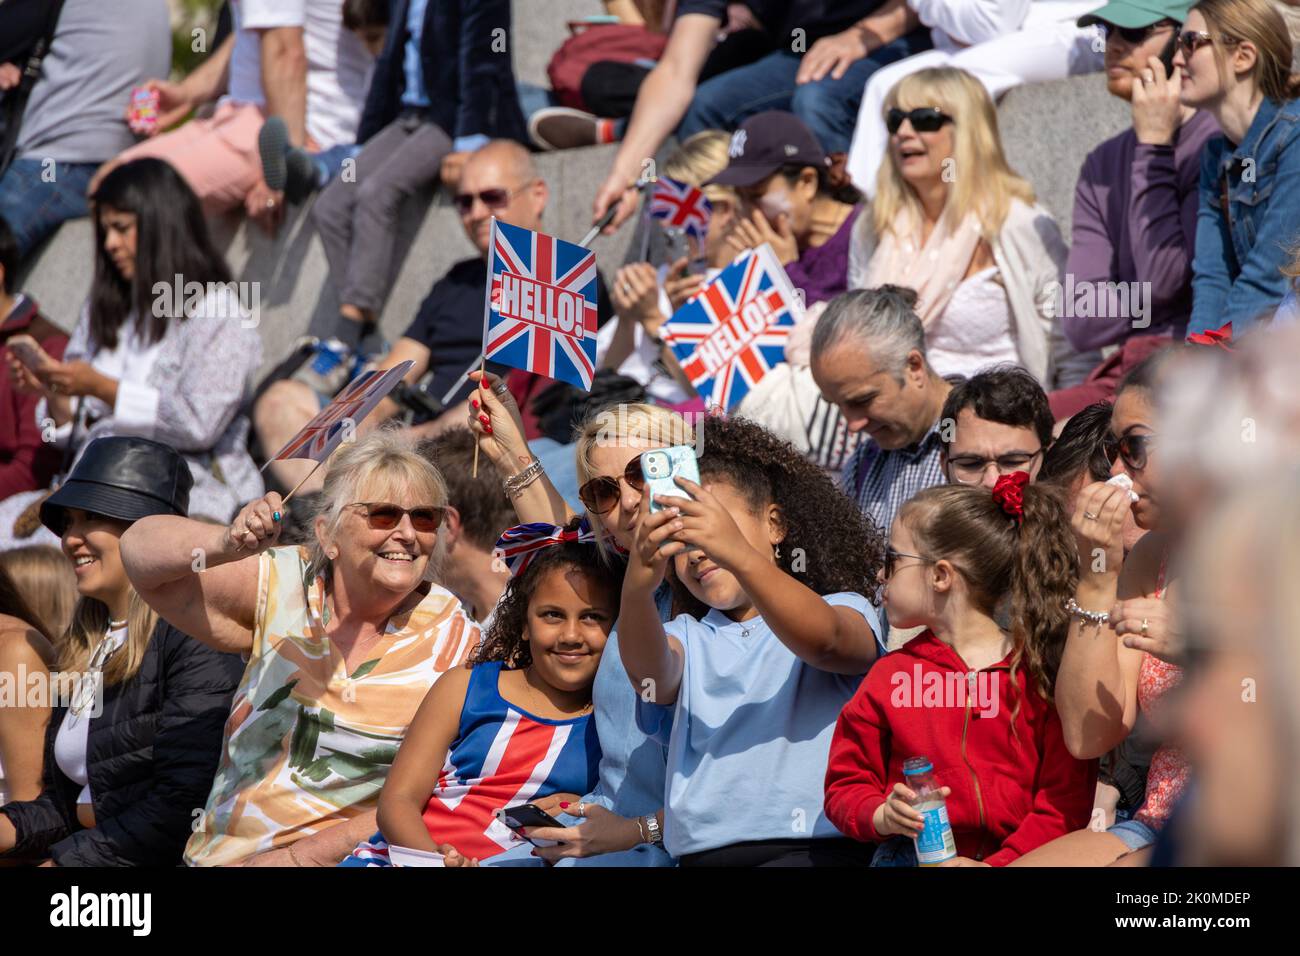 Groupe de personnes prenant un selfie au Royaume-Uni avec des drapeaux de l'Union Jack pendant le Jubilé de platine en juin 2022 Banque D'Images